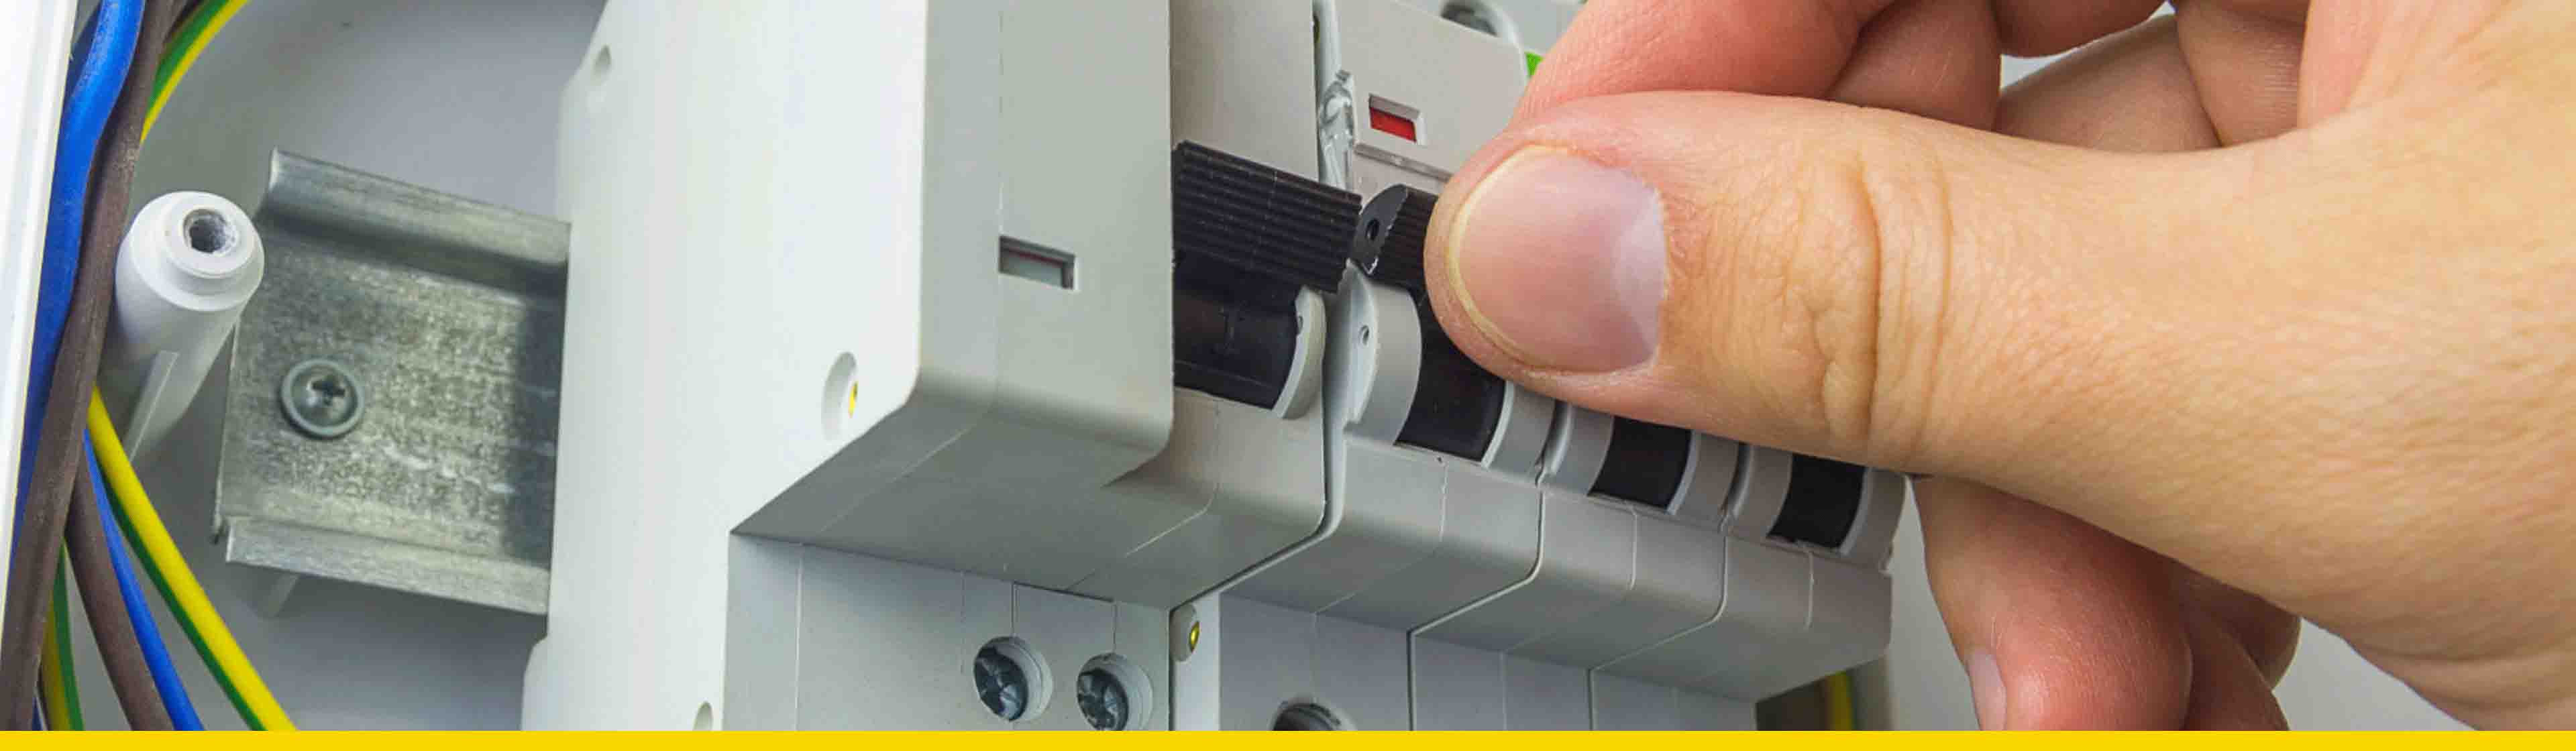 Cajas eléctricas en PVC: aprende cómo instalarlas paso a paso